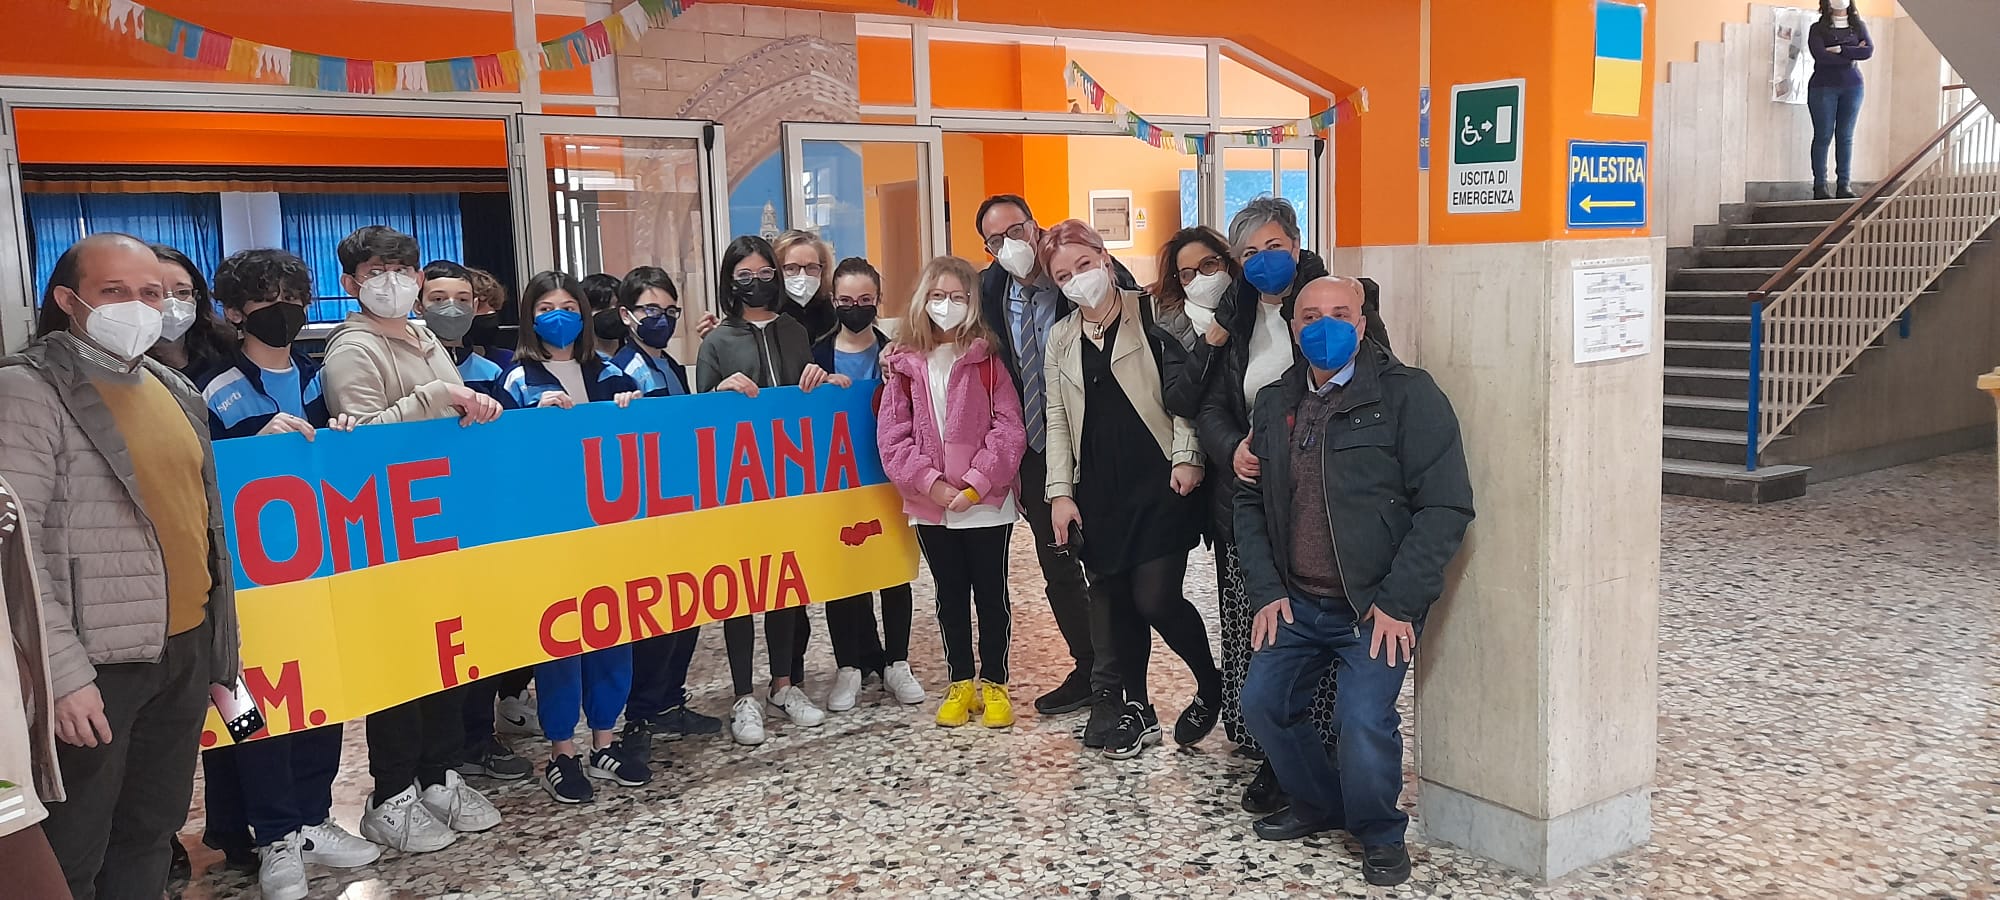 Caltanissetta, solidarietà alla “Don Milani”: raccolta fondi e accoglienza di una studentessa Ucraina